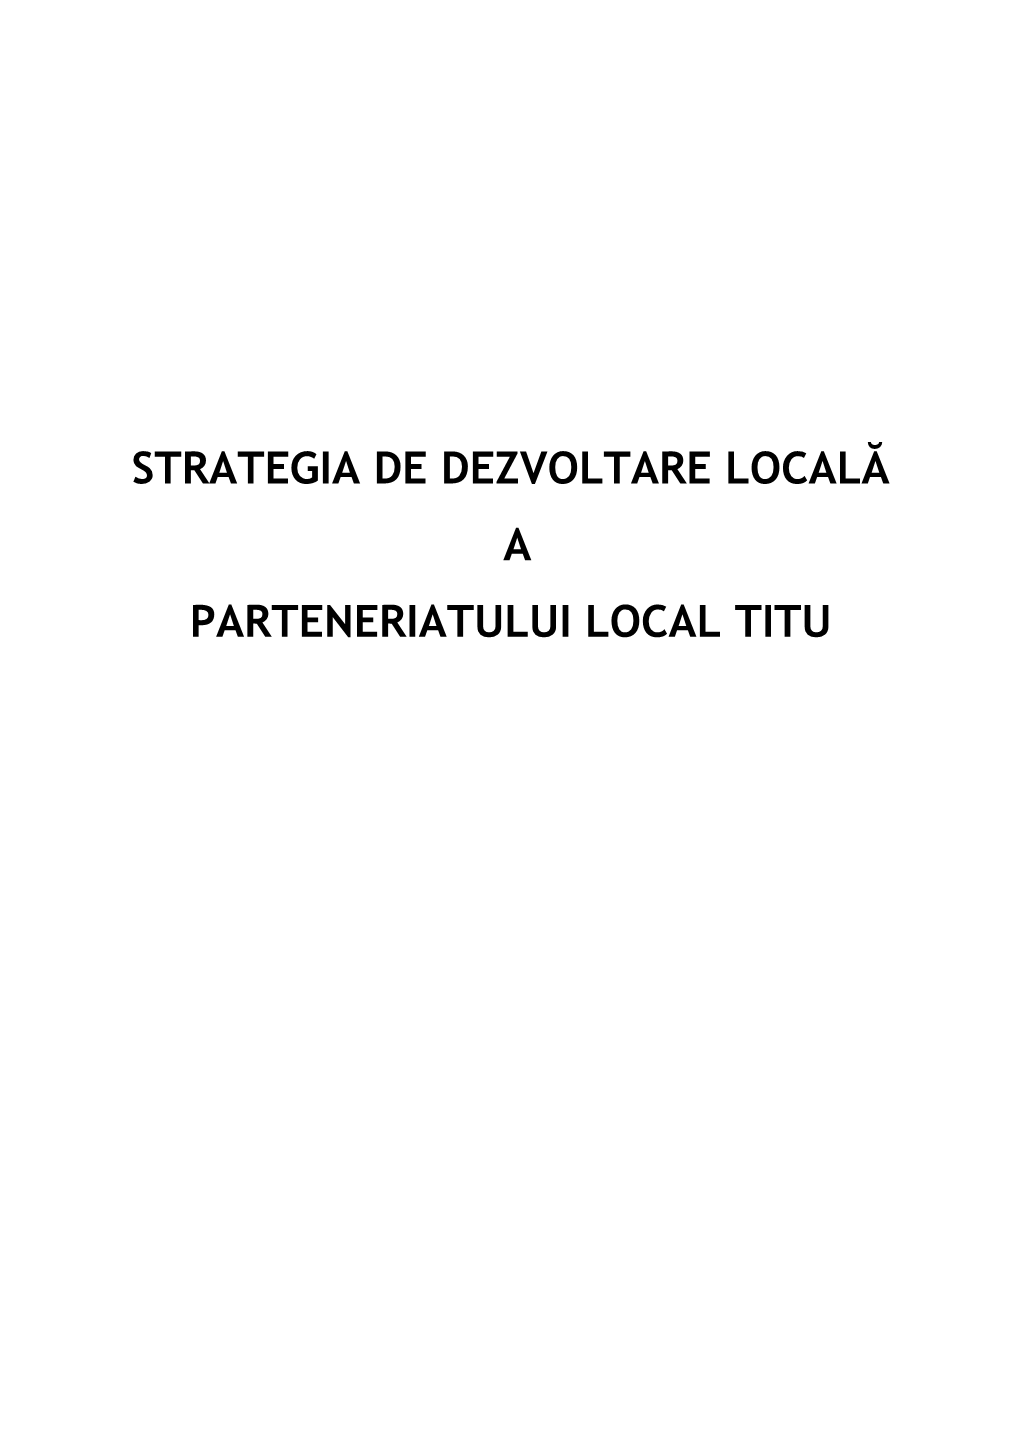 Strategia De Dezvoltare Locală a Parteneriatului Local Titu